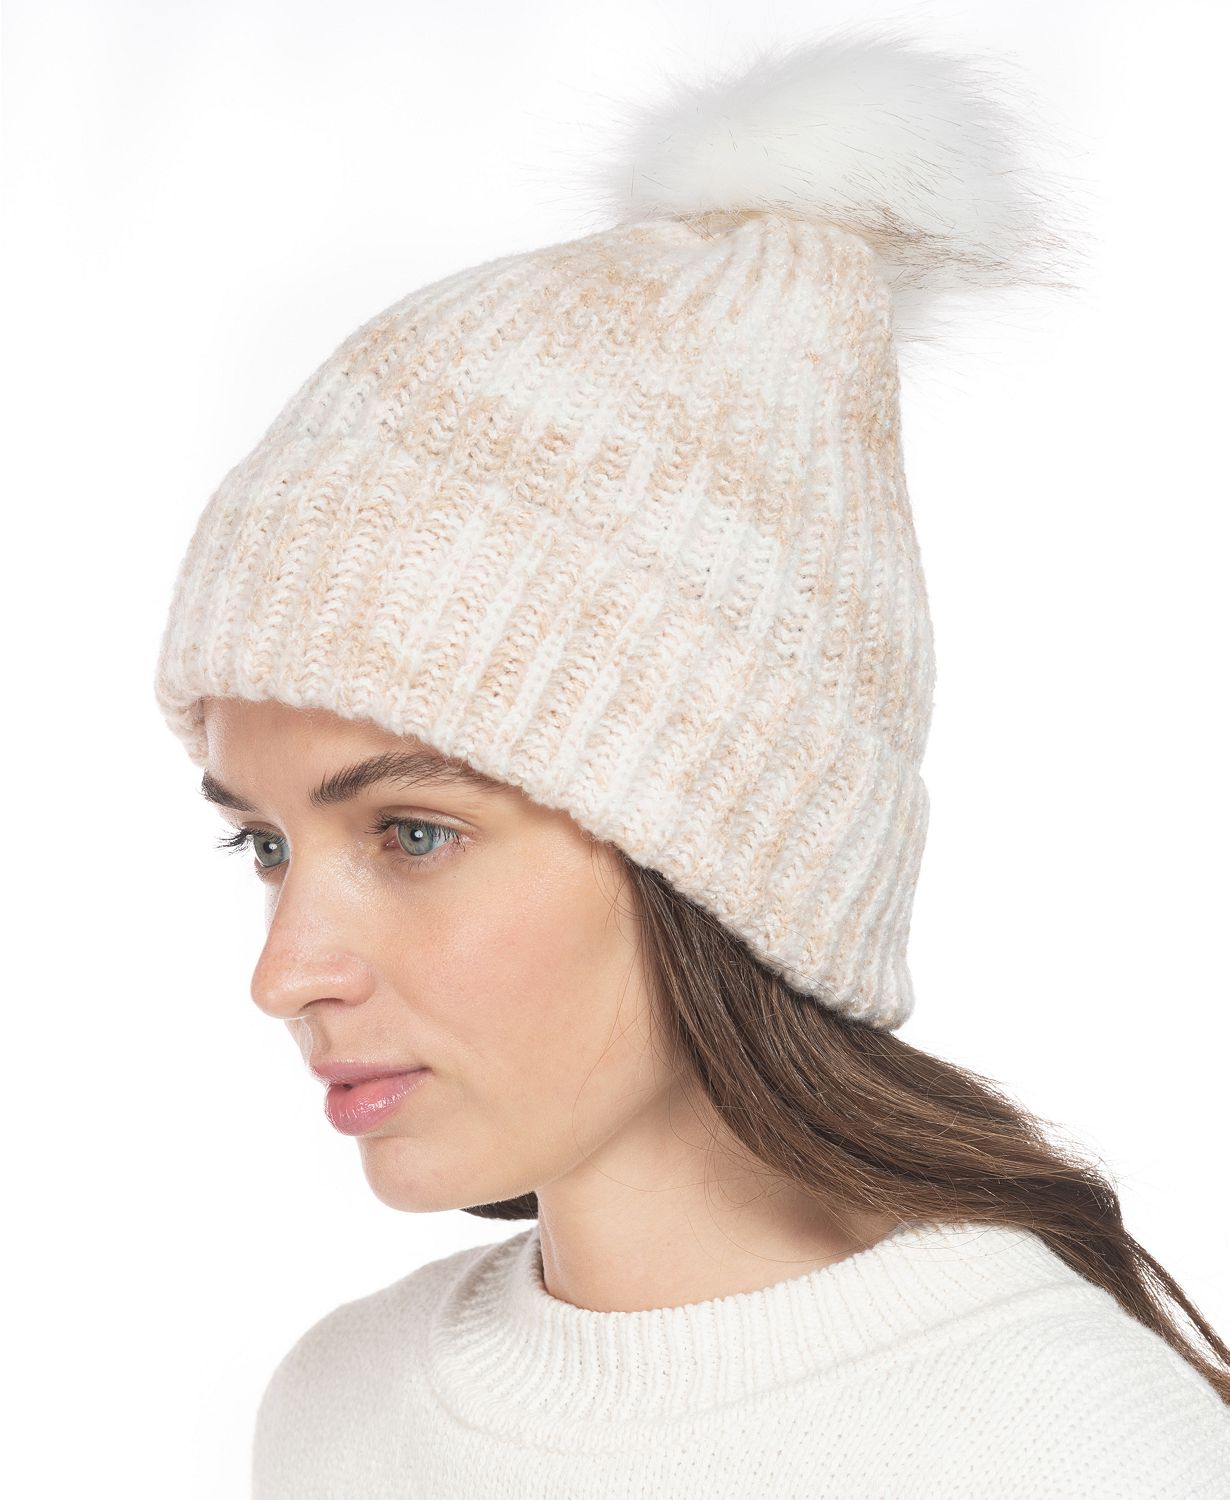 Rib Marled Beanie Hat With Faux-Fur Pom  $4.80